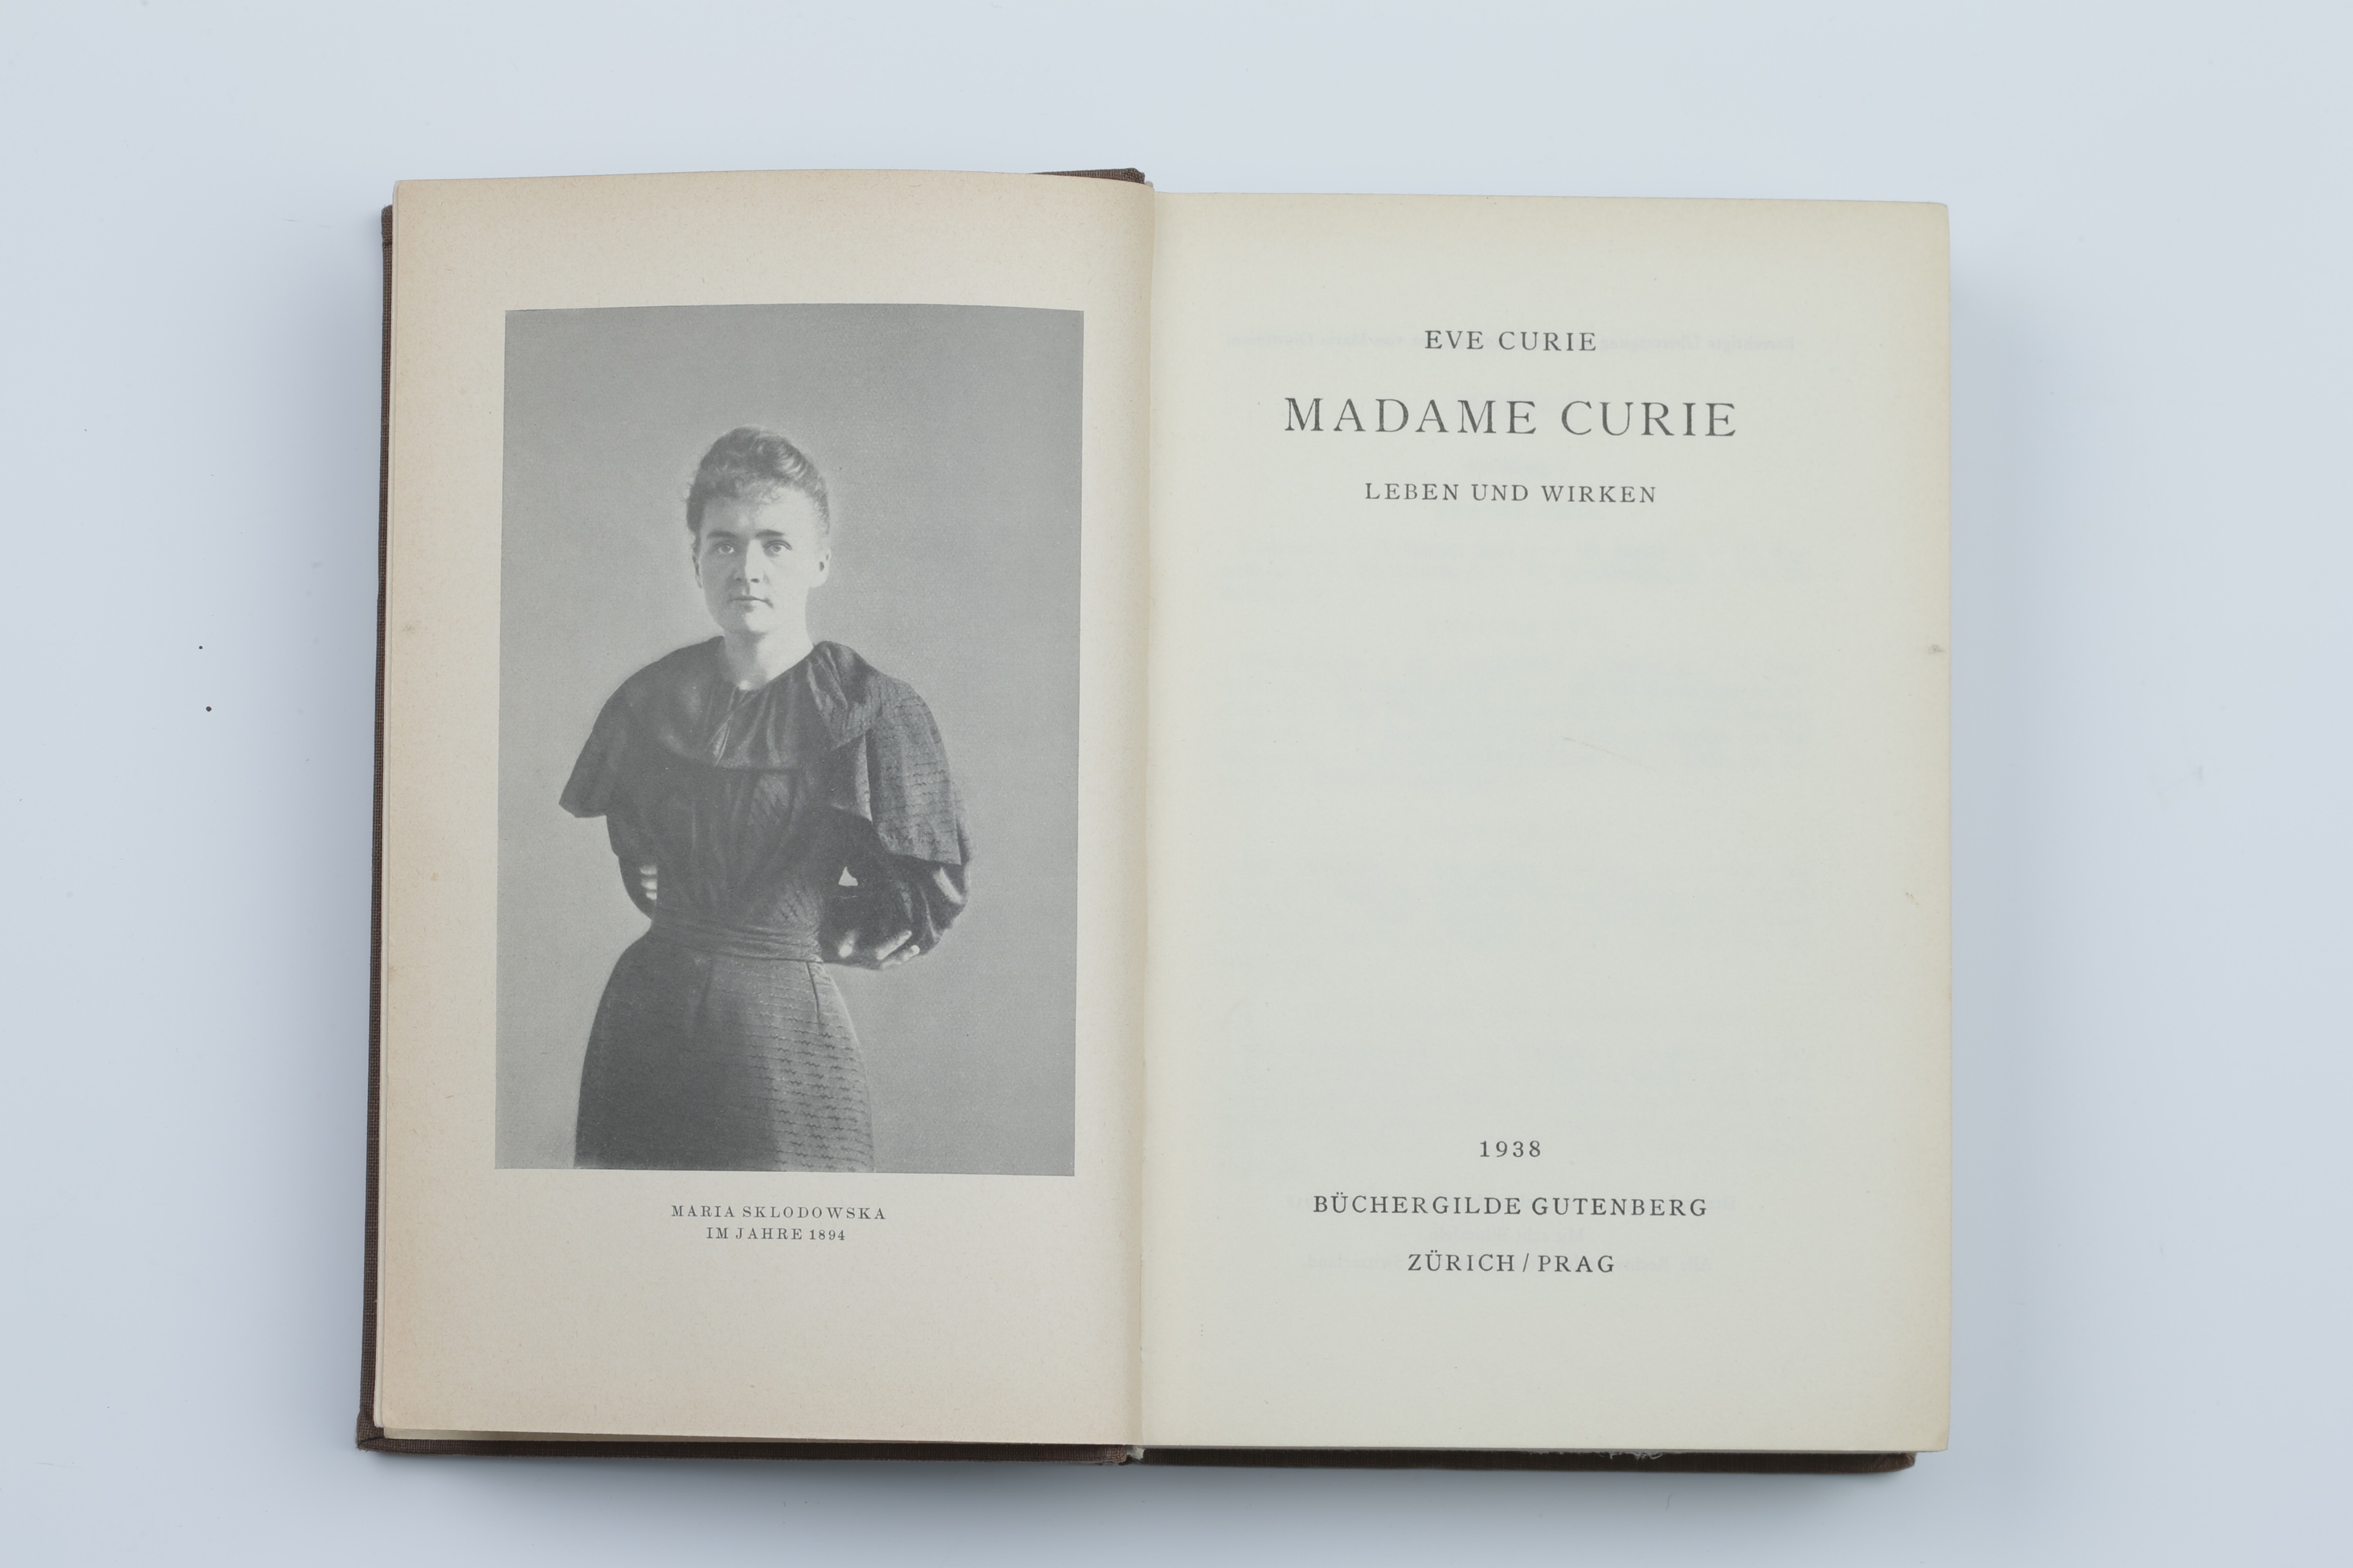 Madam Curie, Eve Curie